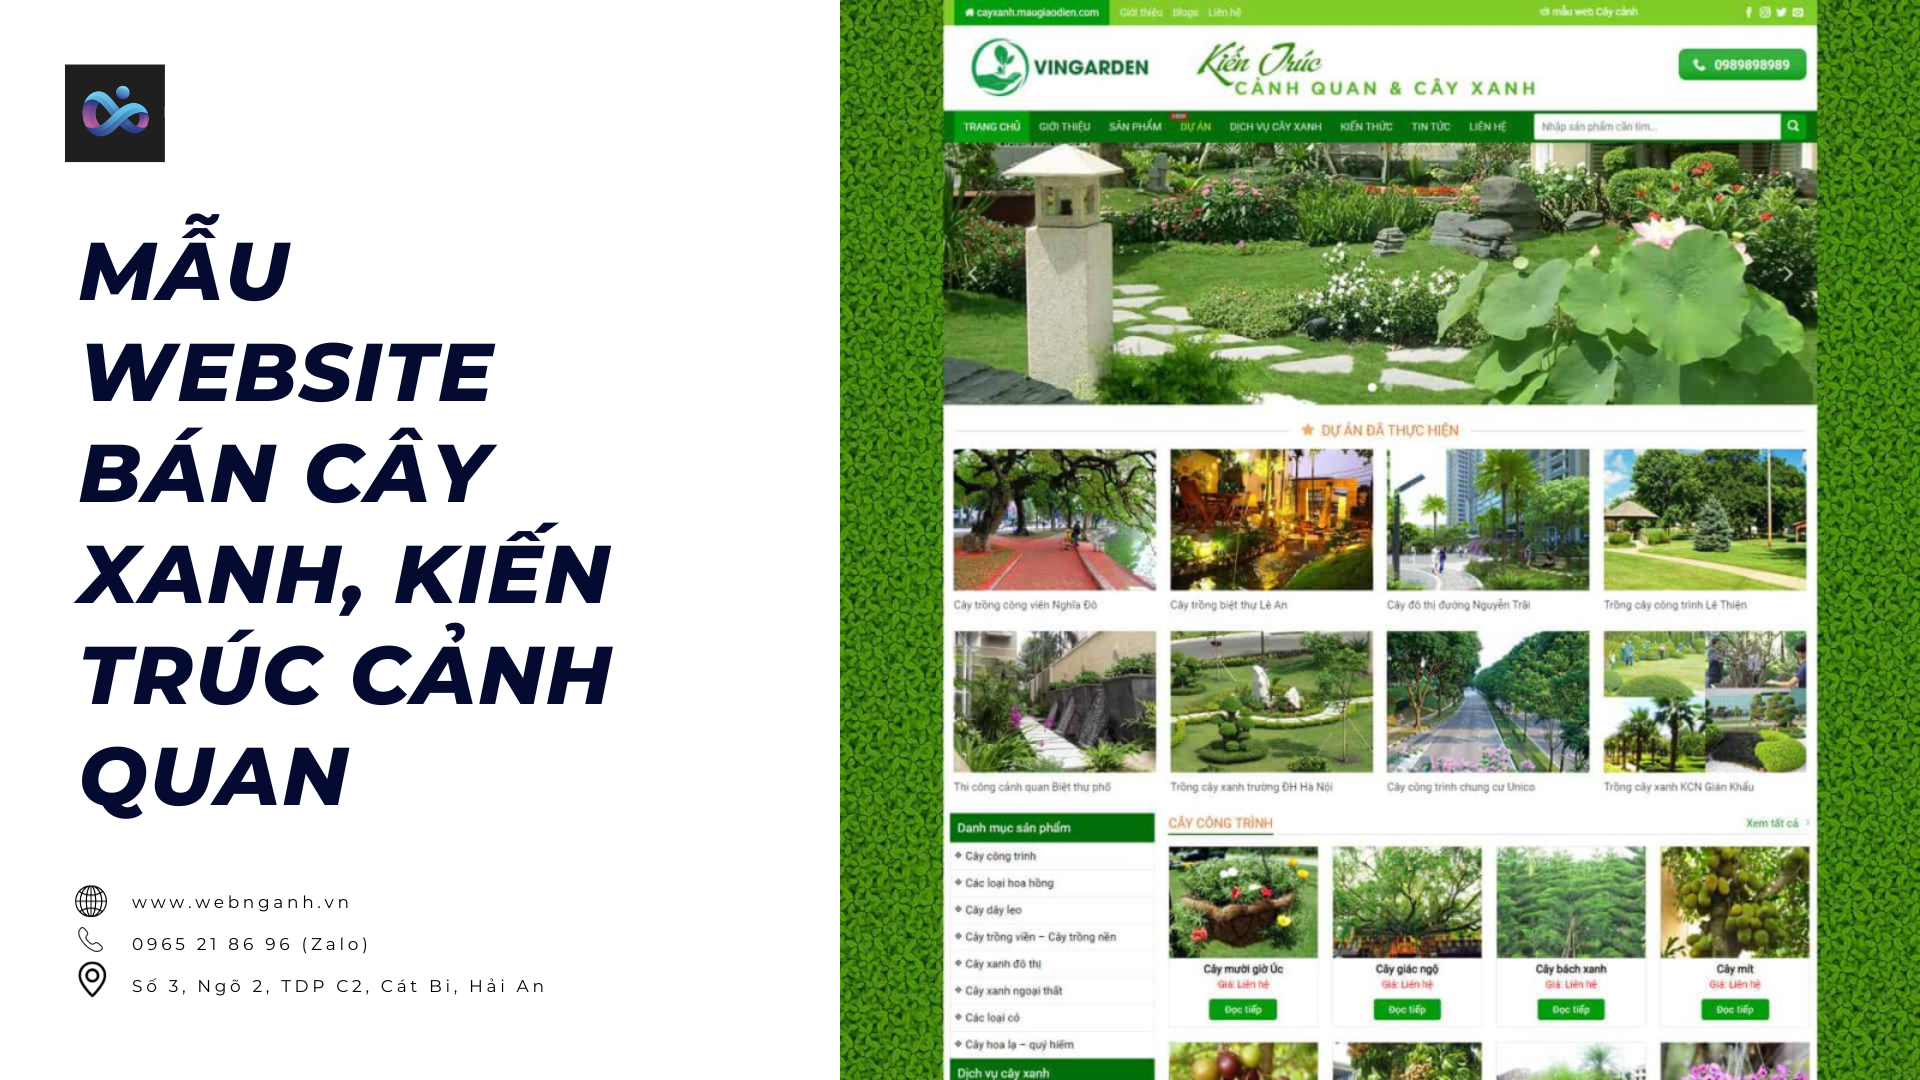 Mẫu Website bán cây xanh, kiến trúc cảnh quan